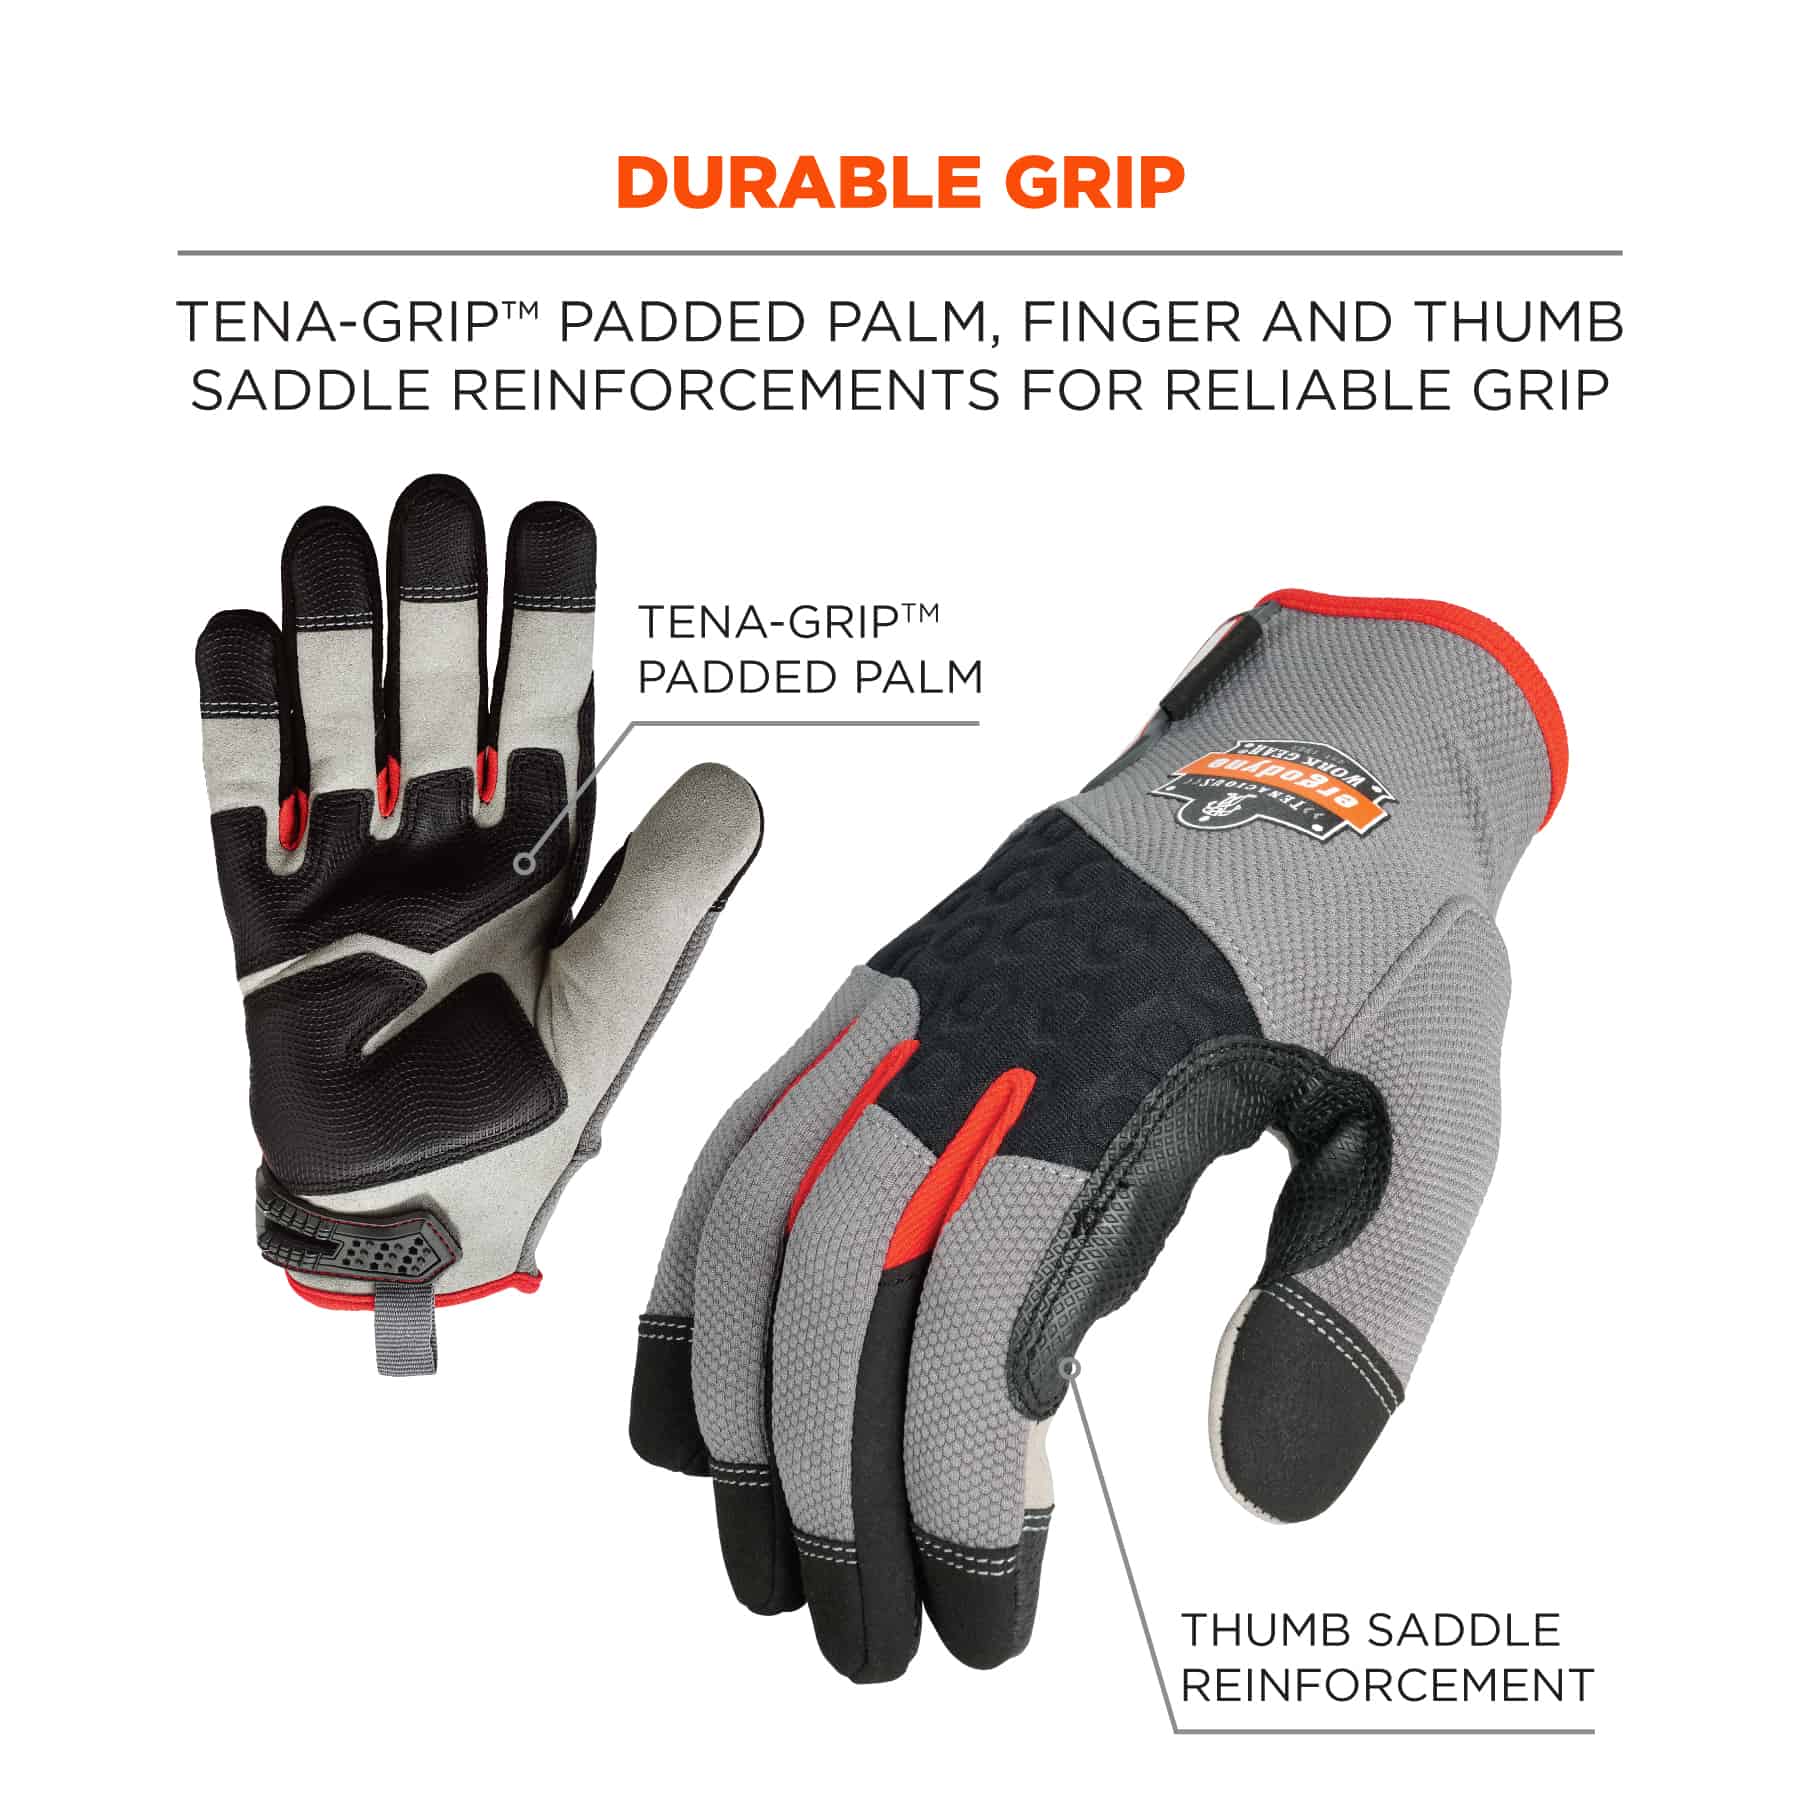 Cut Resistant Gloves - M - HART Tools